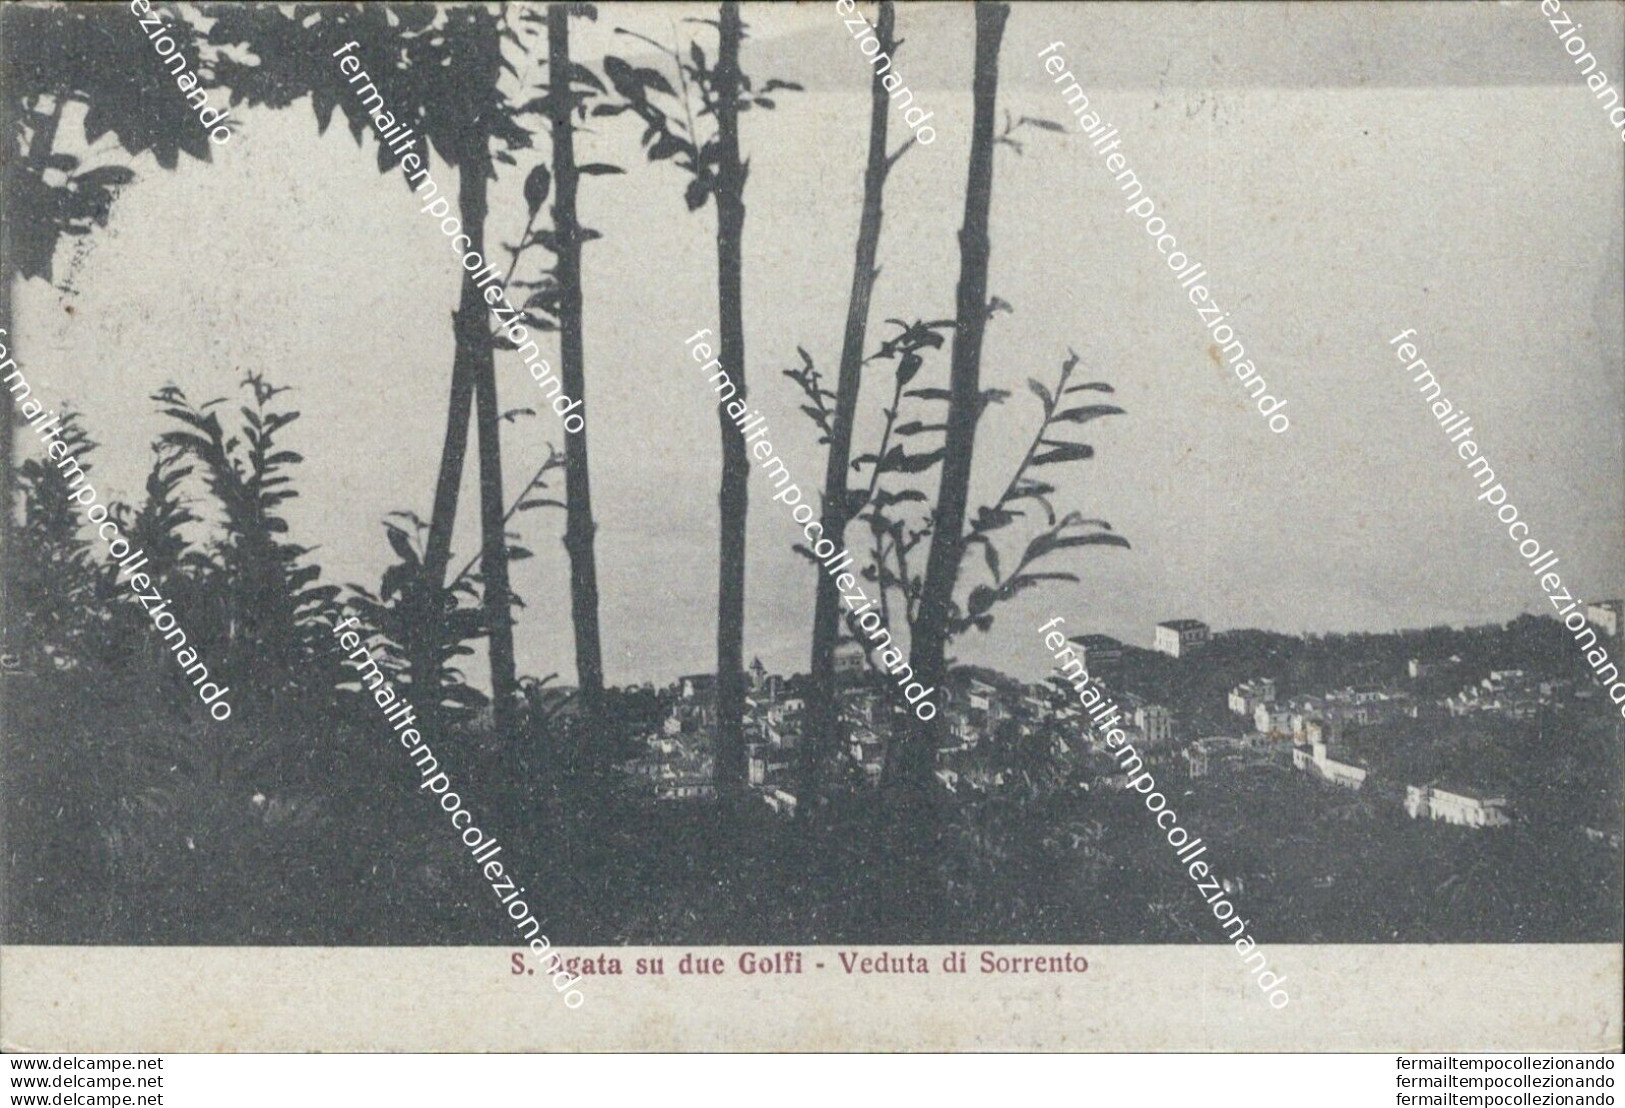 Bf382 Cartolina S.agata Su Deu Golfi Veduta Di Sorrento Provincia Di Napoli 1927 - Napoli